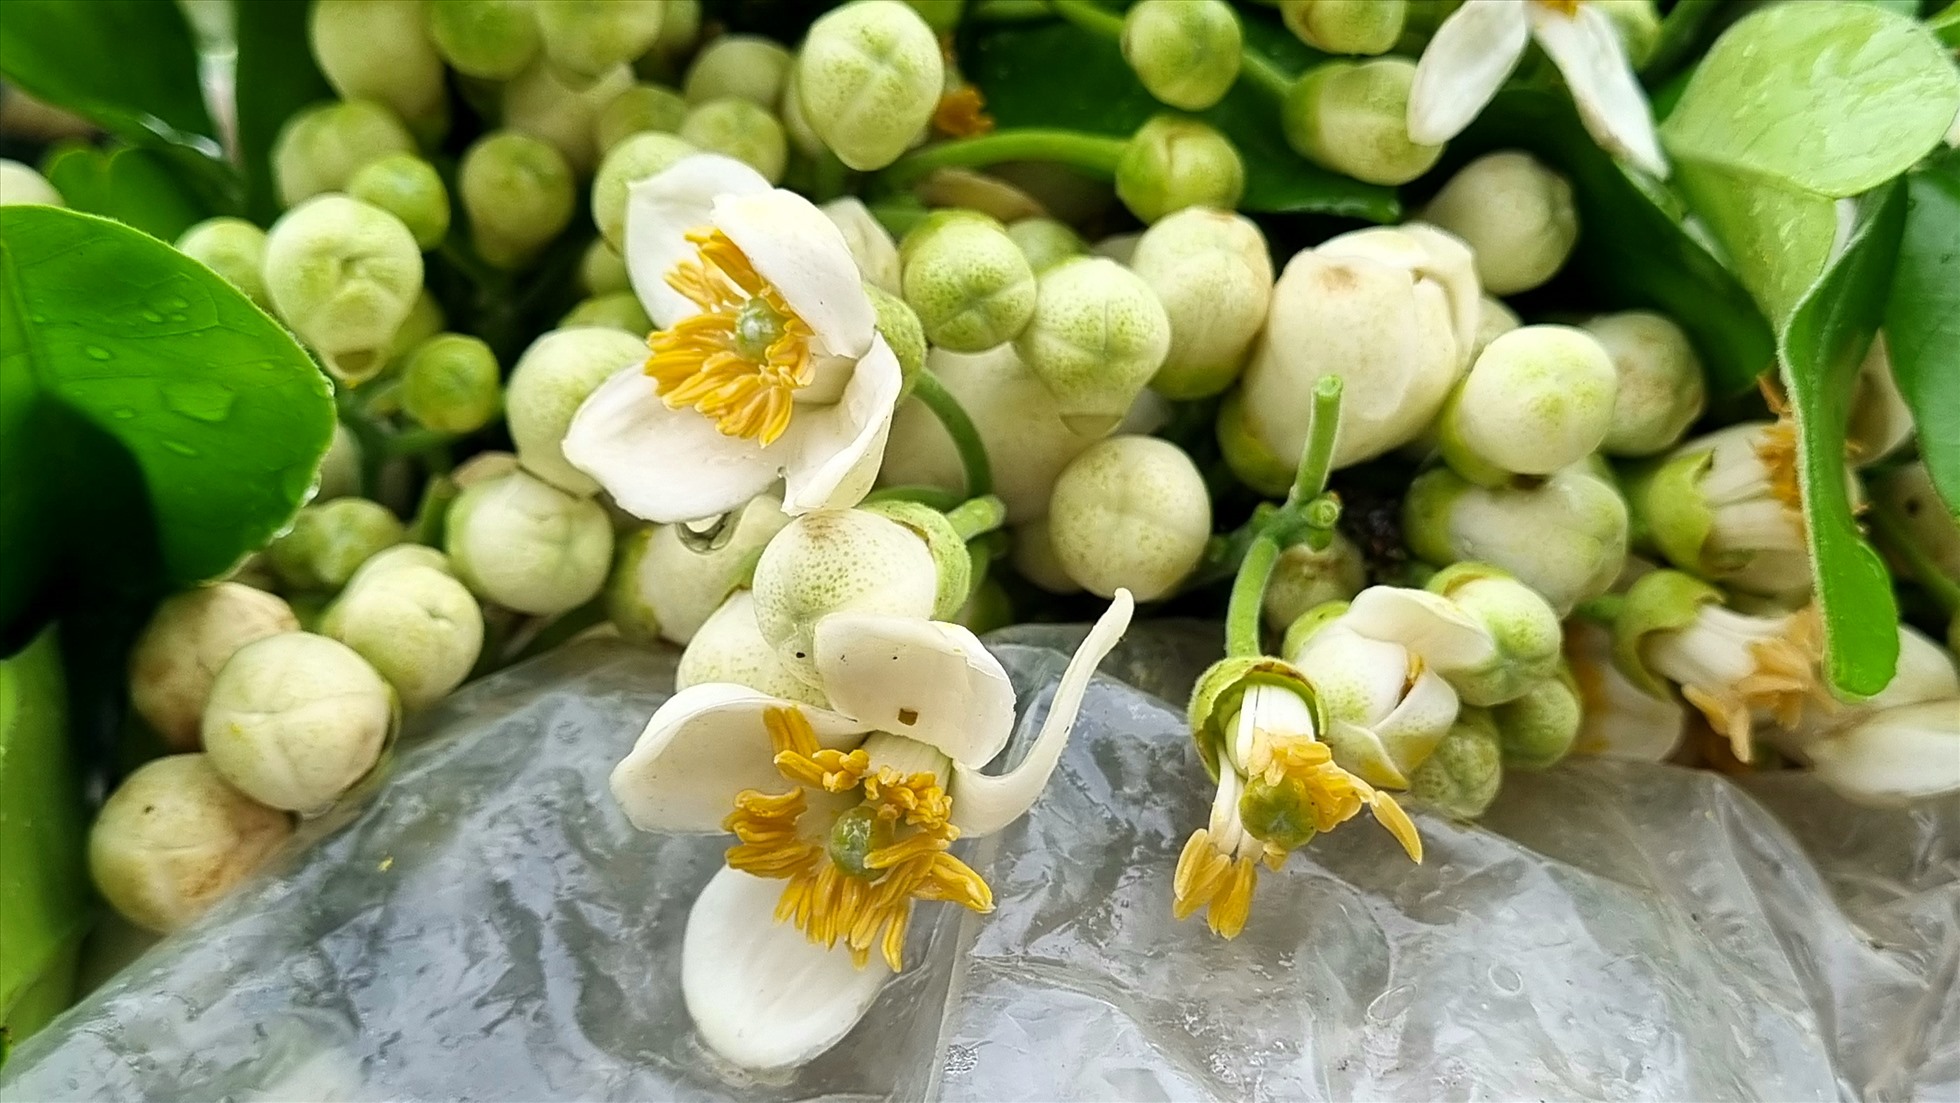 Hoa bưởi với những cánh hoa trắng muốt bao quanh nhụy vàng, có mùi thơm dìu dịu, giữ hương thơm lâu nên được nhiều người ưa thích.